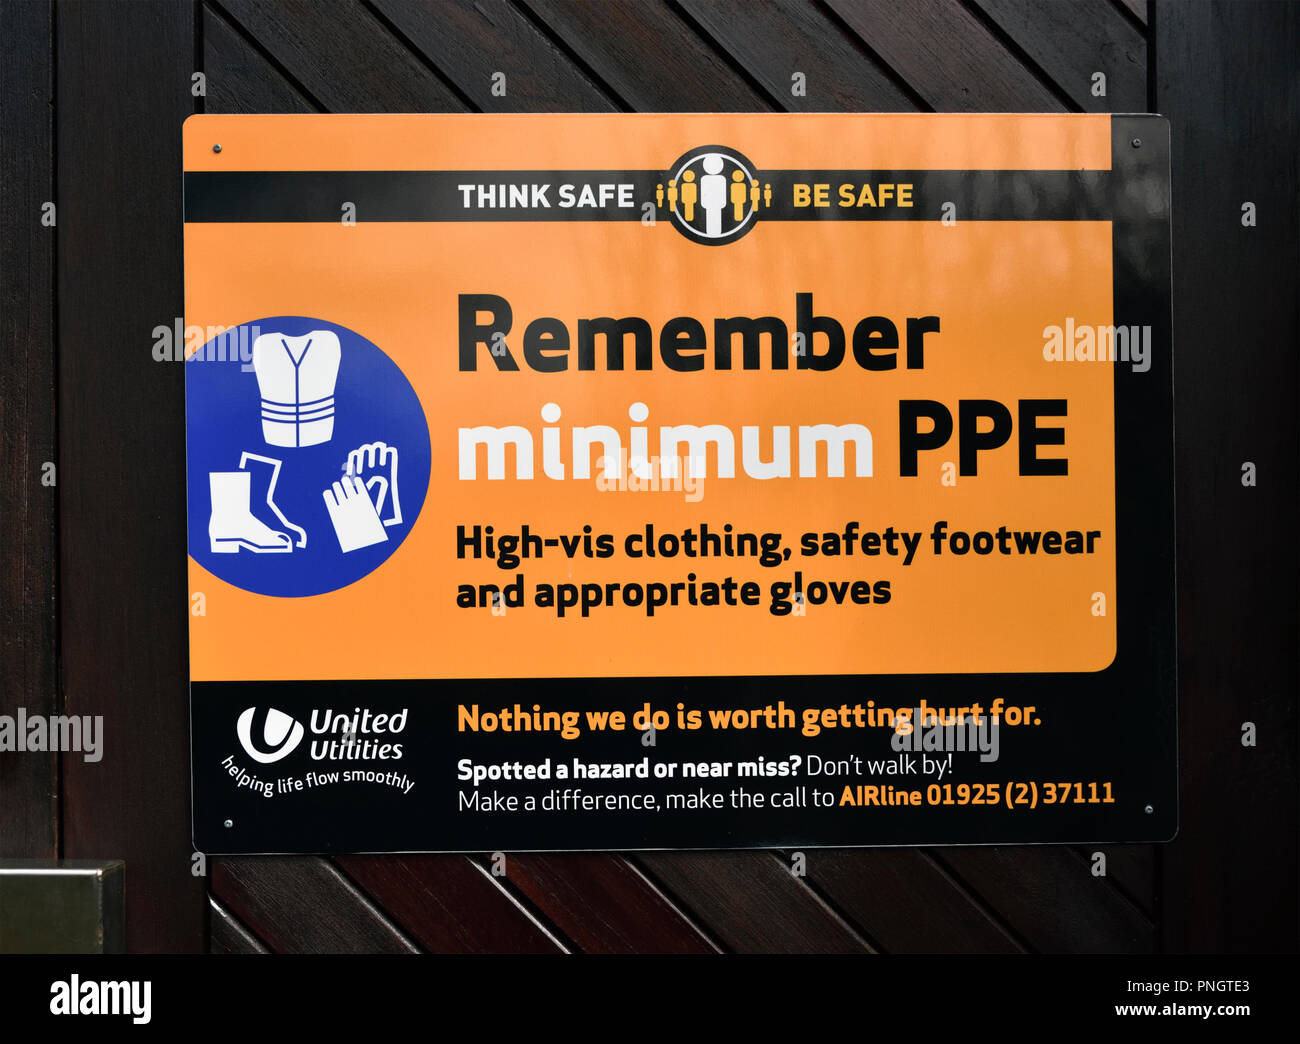 United Utilities Sicherheit feststellen. Sicher sicher sein Denken. Denken Sie daran, mindestens PPE. High-vis Kleidung, Sicherheitsschuhe und Handschuhe. Stockfoto